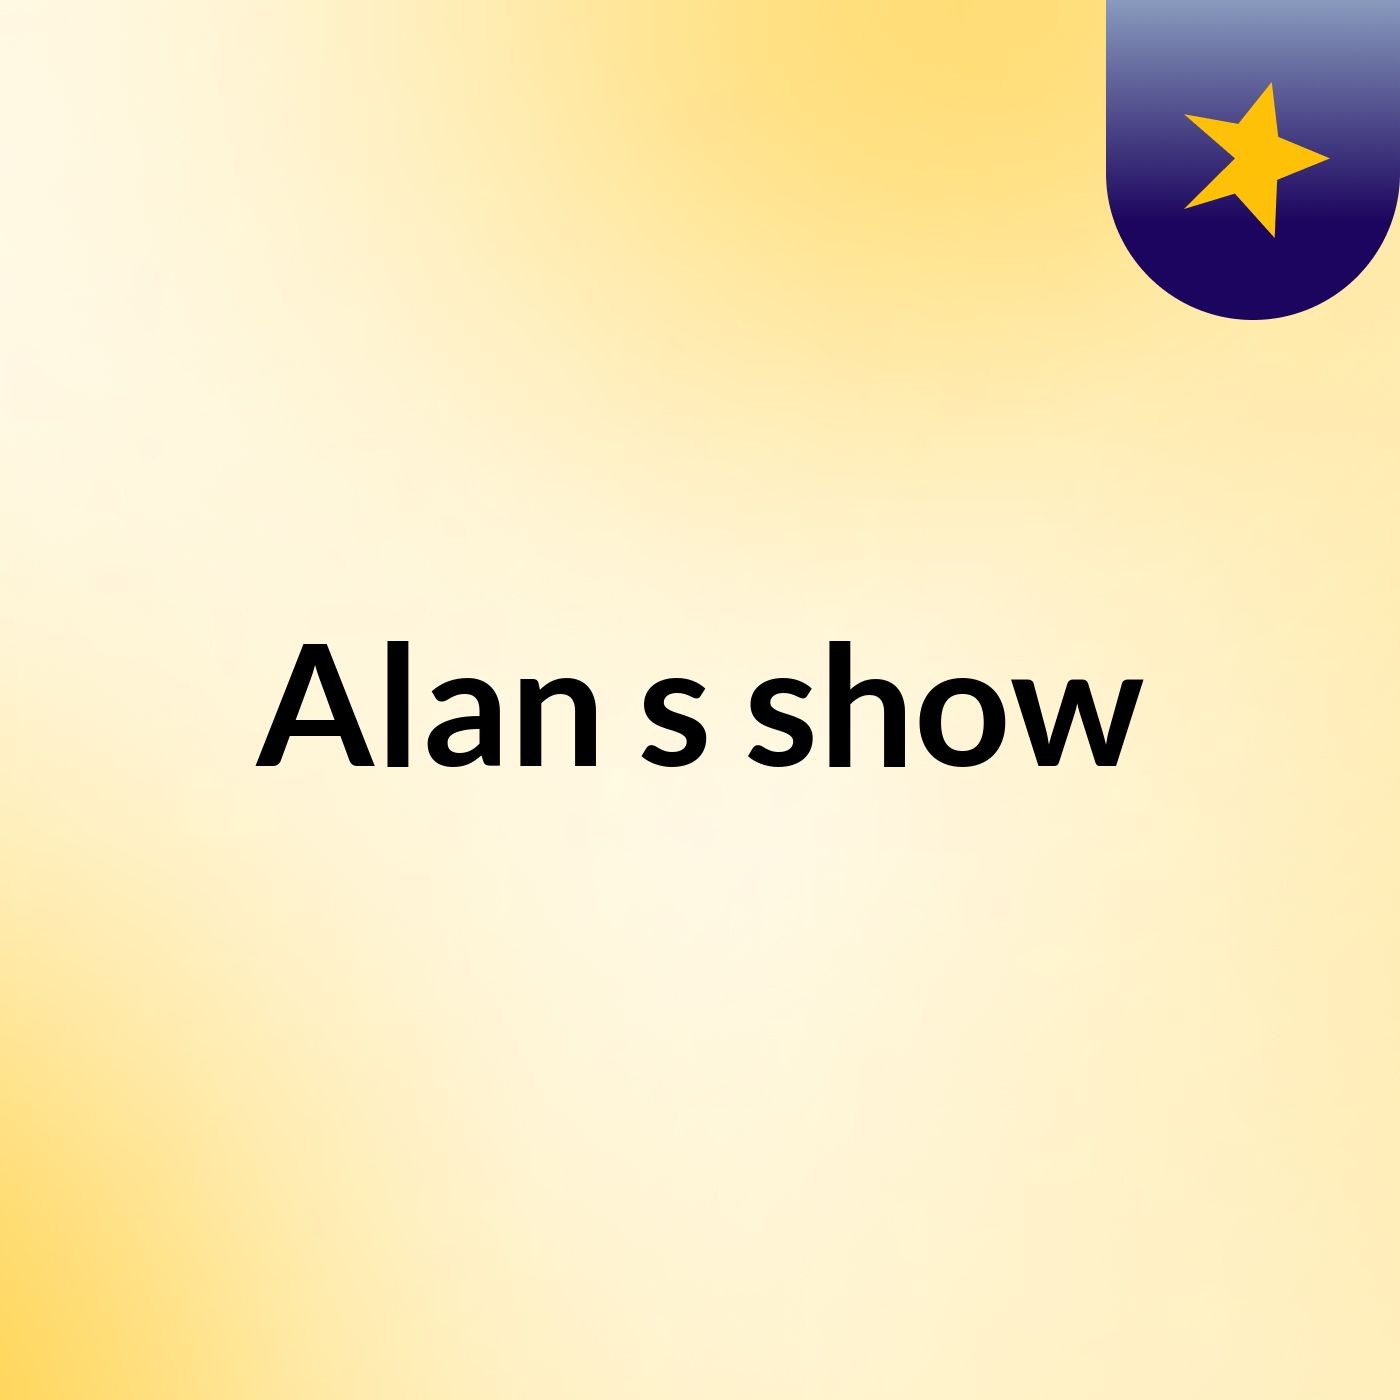 Alan's show